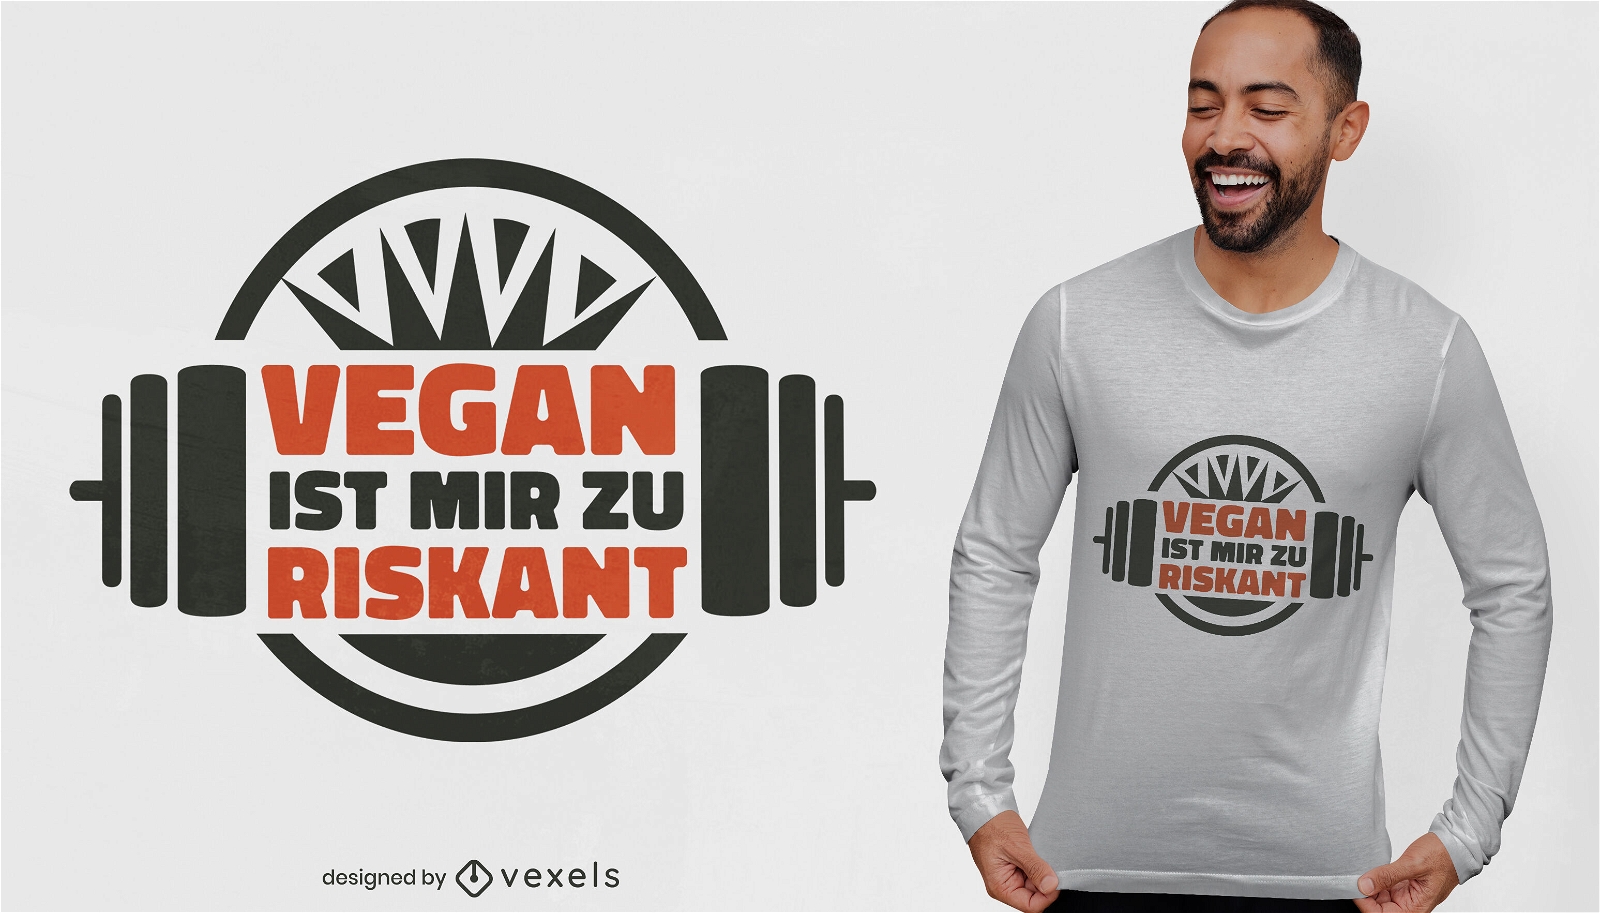 Vegan ist zu riskant f?r mich T-Shirt-Design